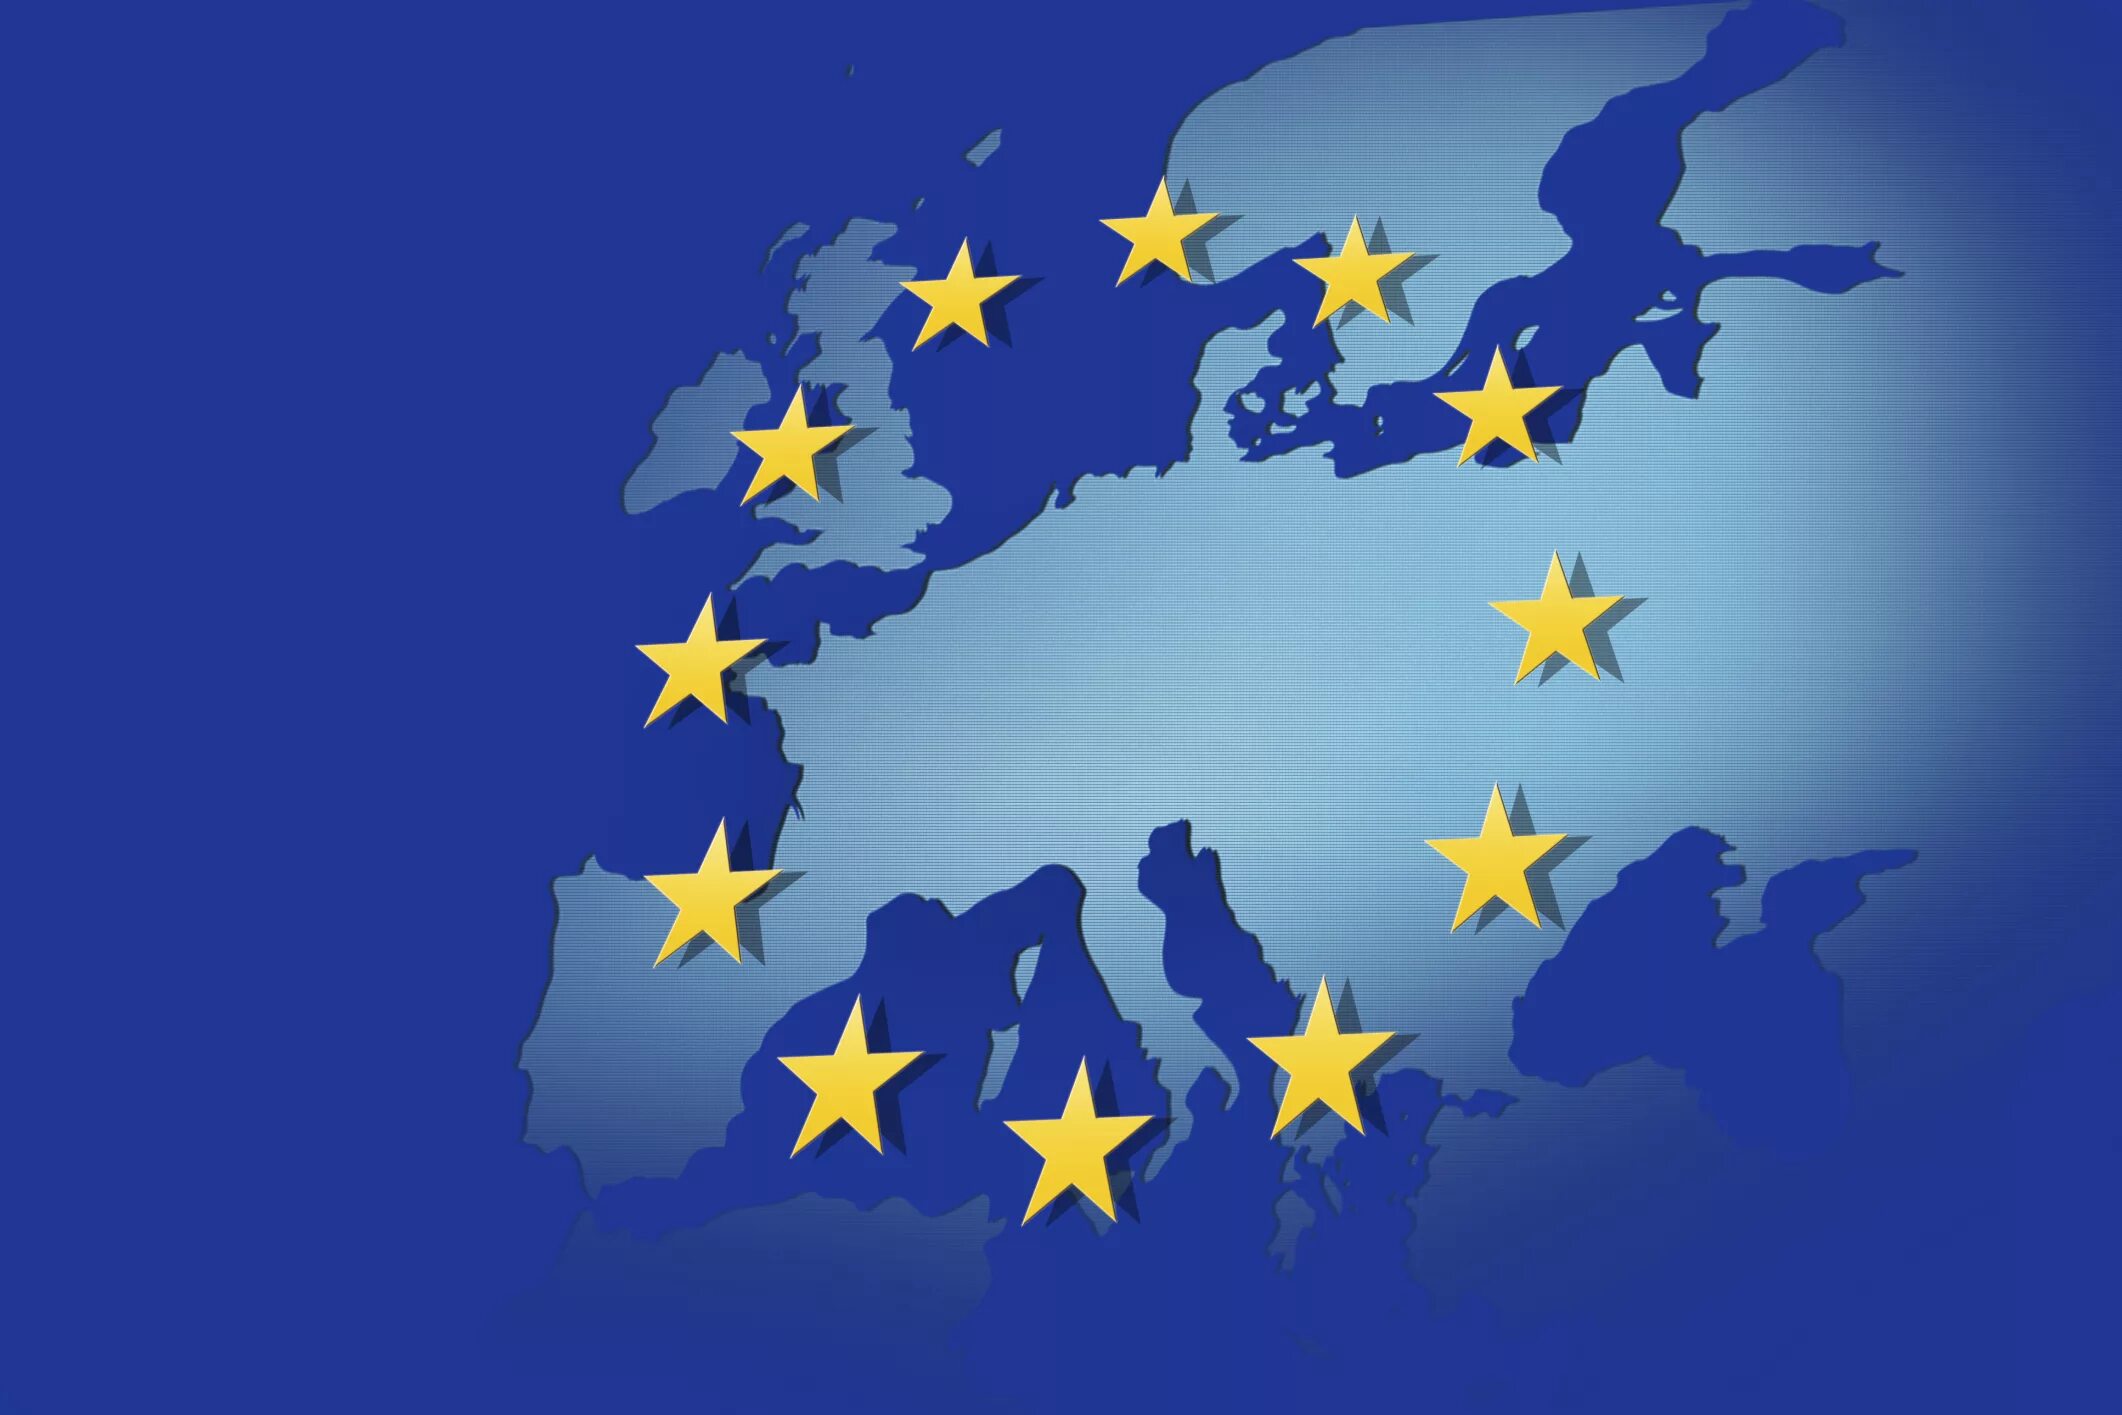 Ec europa eu. Европейский Союз (Евросоюз, ЕС). Евросоюз 1993. Флаг европейского Союза 2020. Еврокомиссия флаги ЕС.